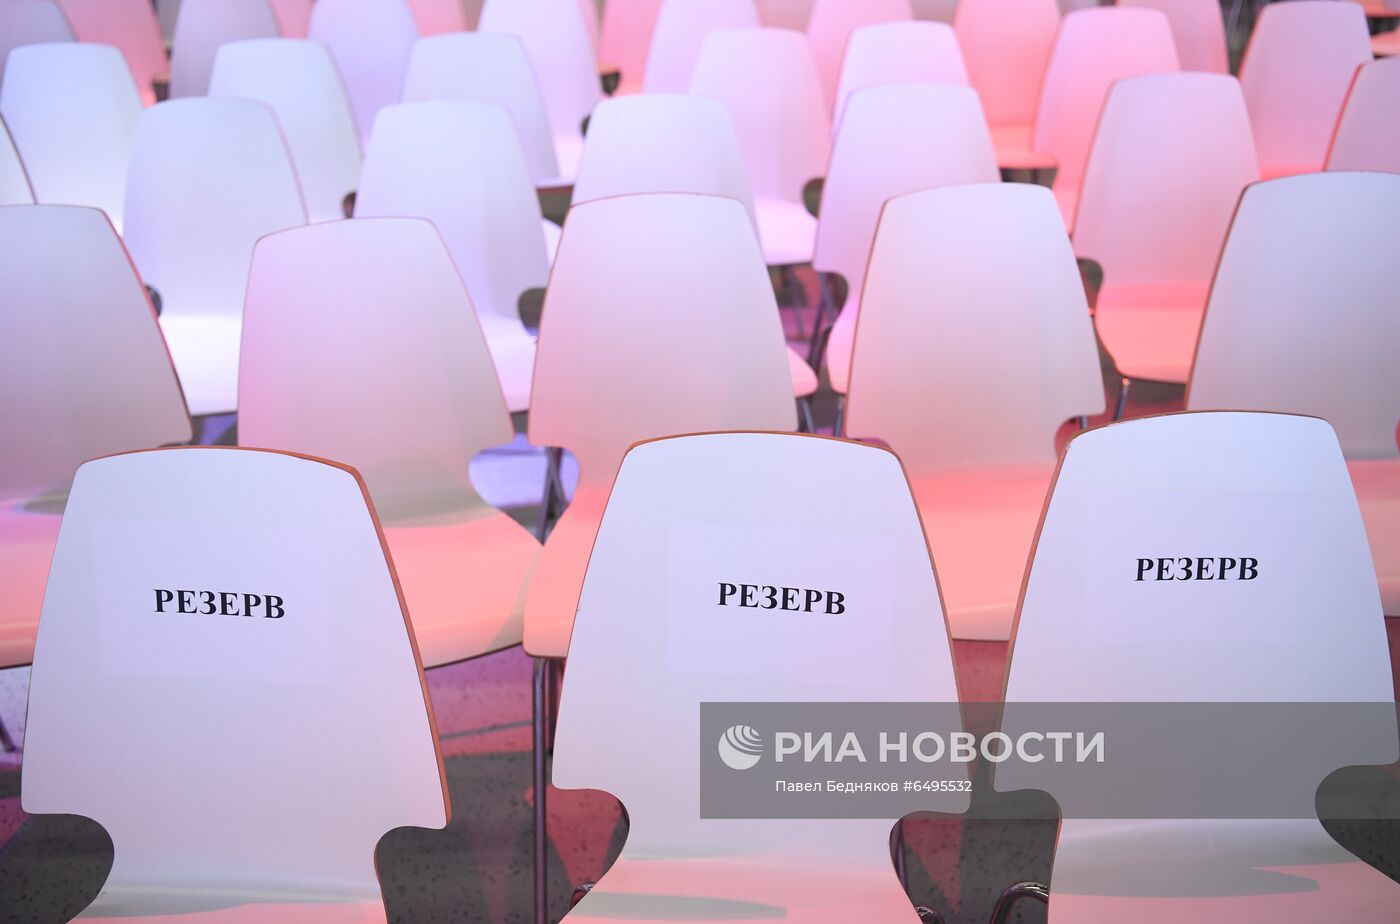 XVI Всероссийский форум-выставка "Госзаказ"